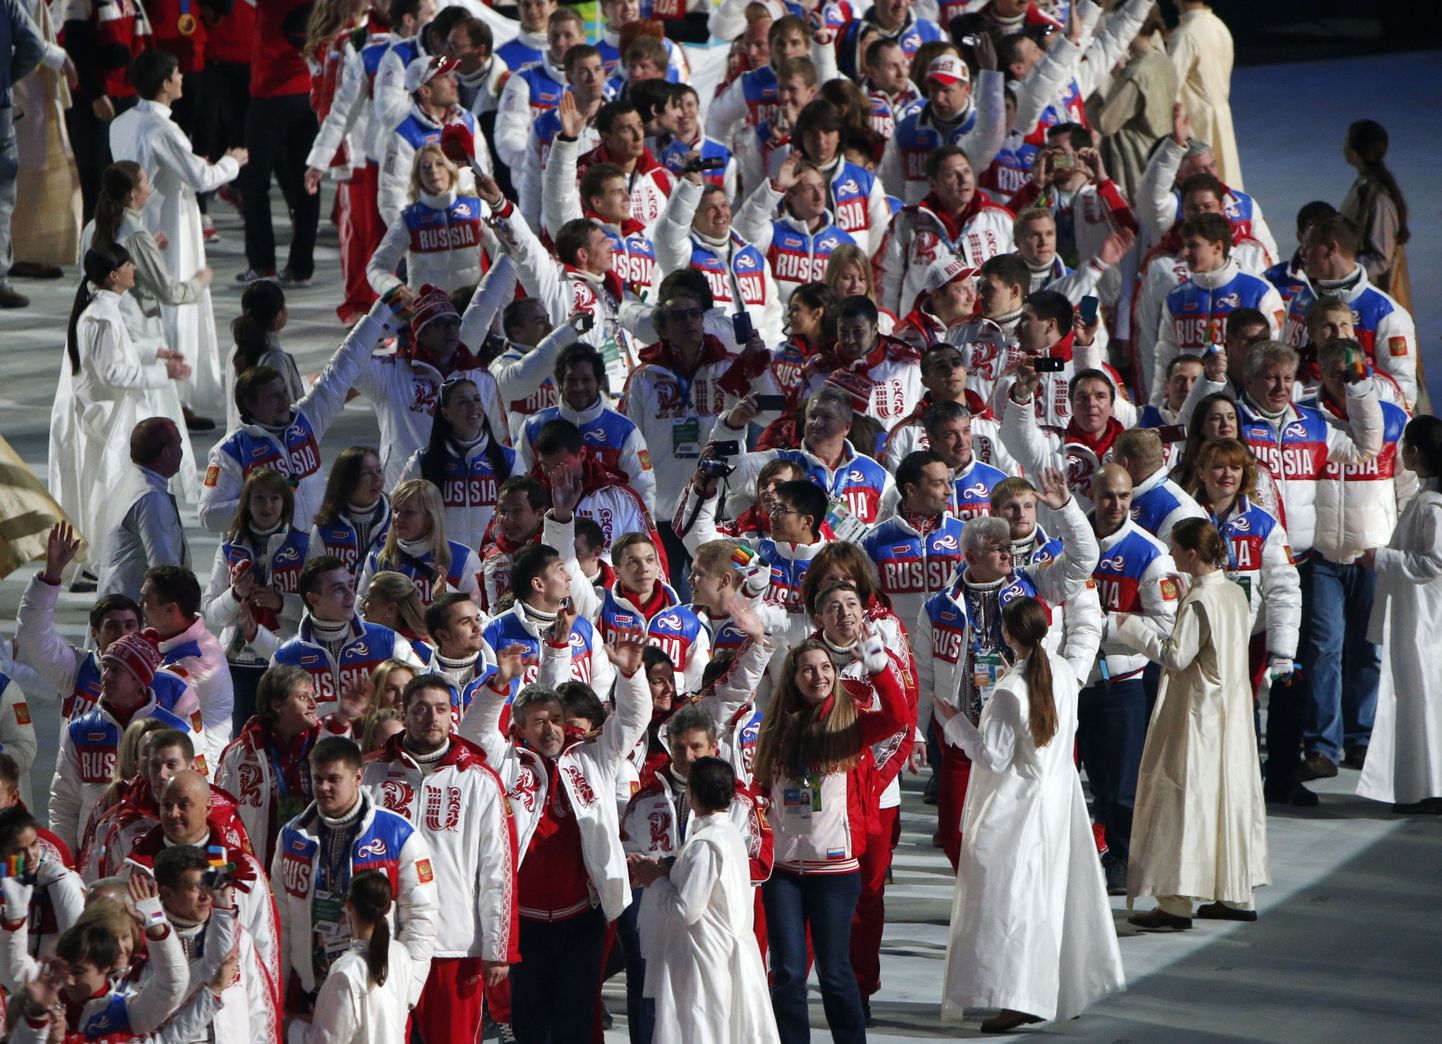 Venemaa olümpiakoondise delegatsiooni liikmed Sotši OMi lõputseremoonial.